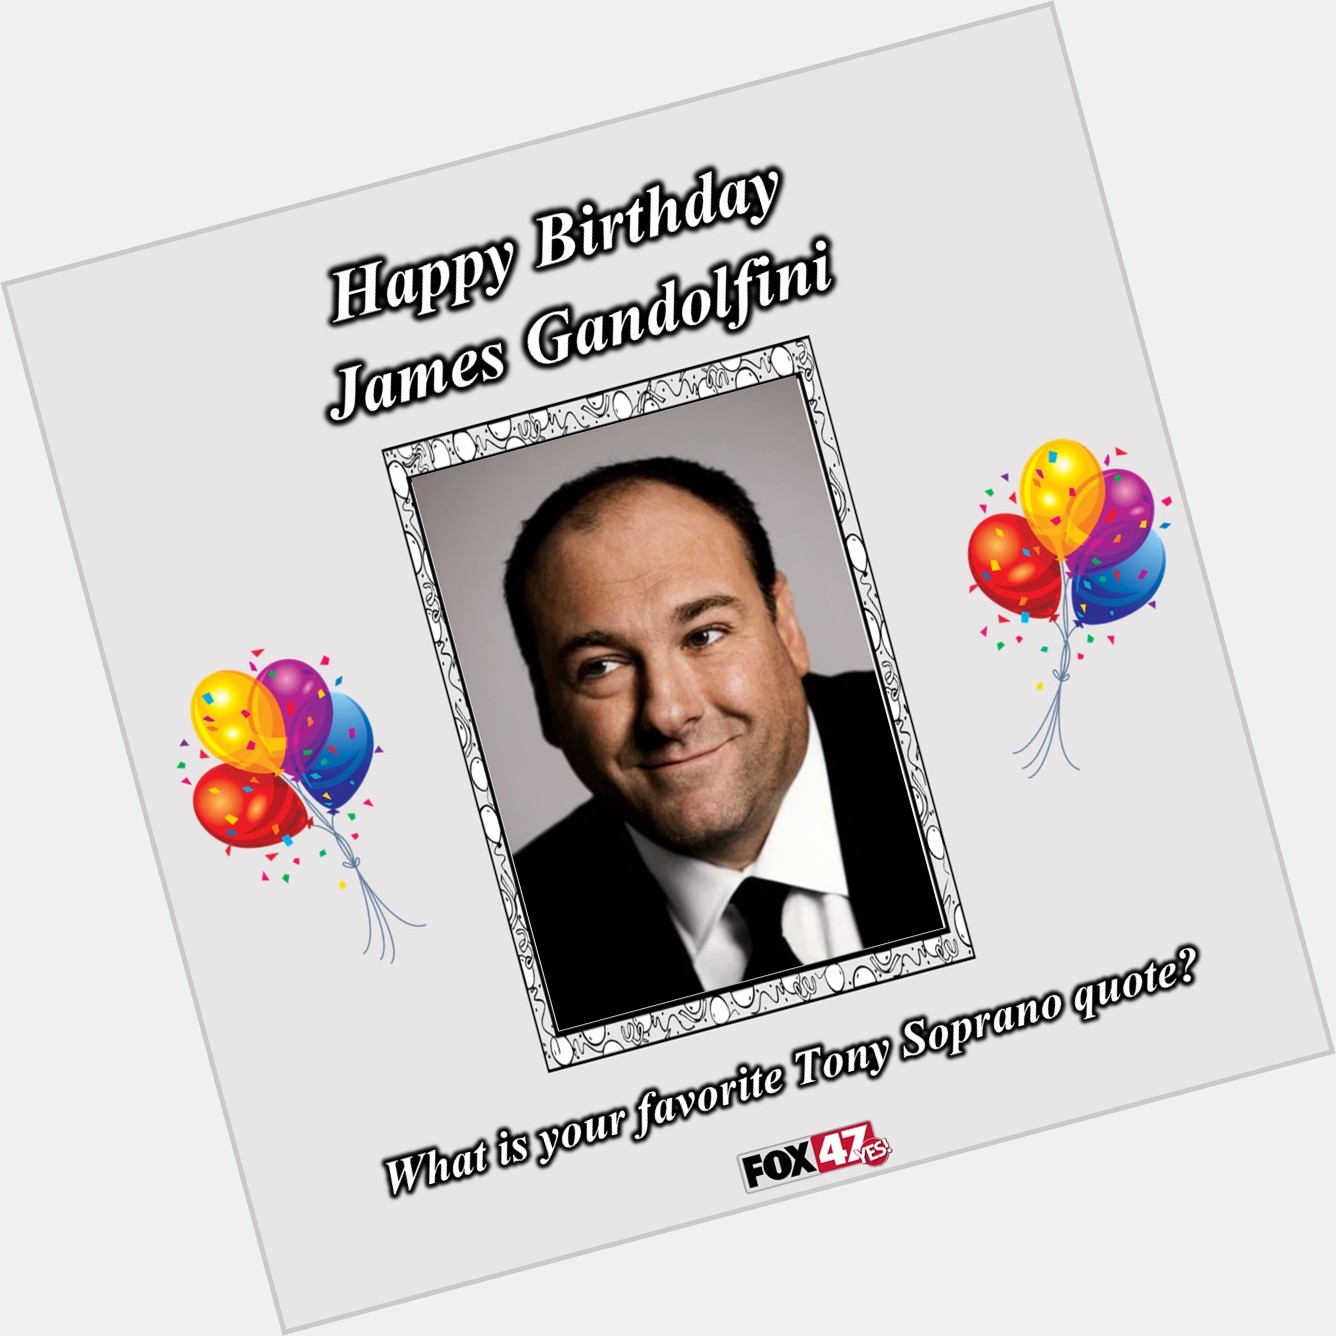 Happy Birthday James Gandolfini!  What is your favorite Tony Soprano quote? 